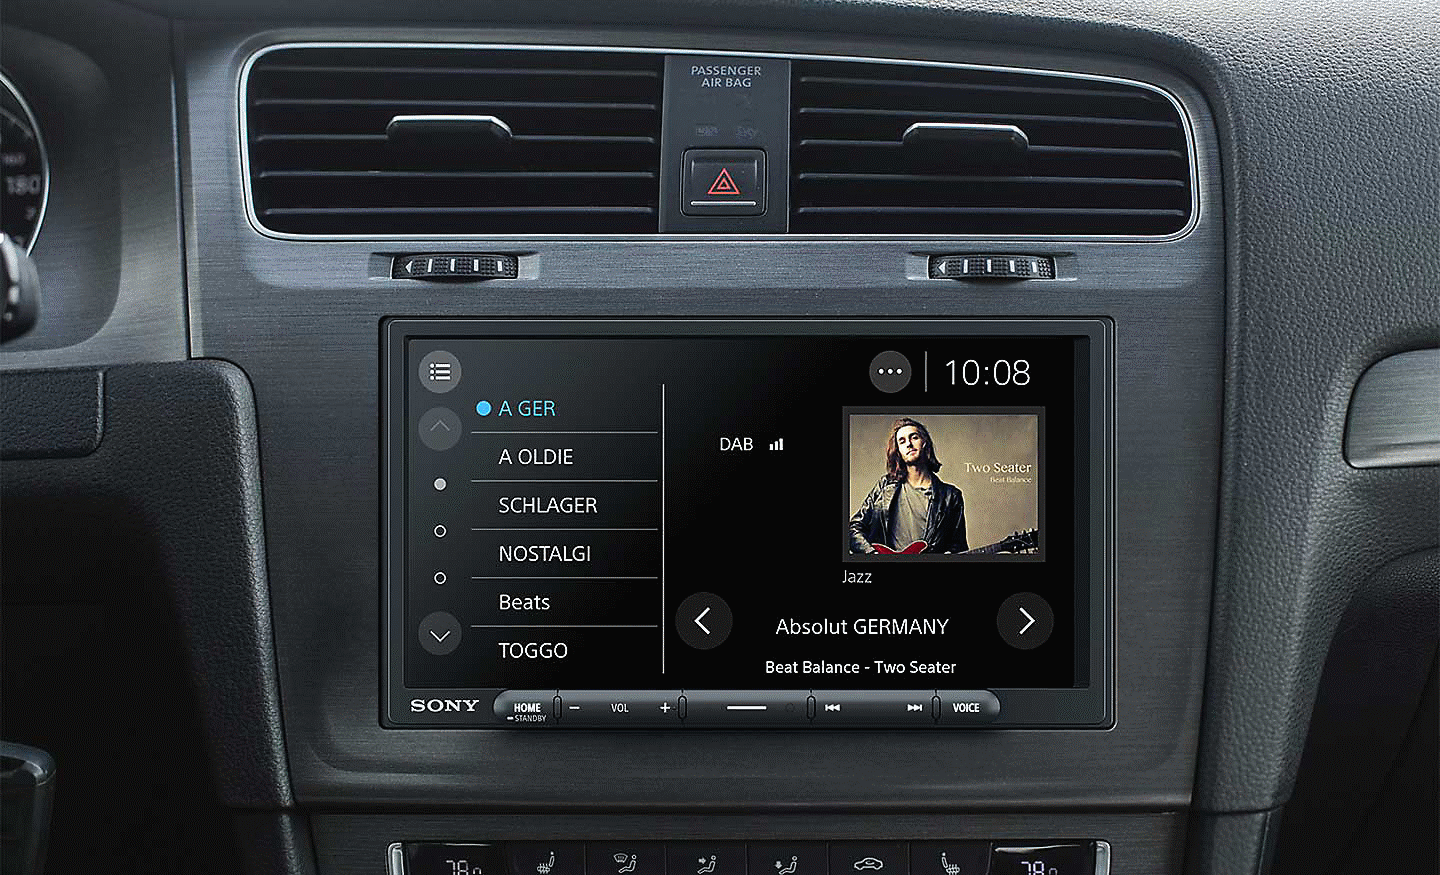 Image du XAV-AX4050 sur un tableau de bord avec l'interface radio DAB à l'écran